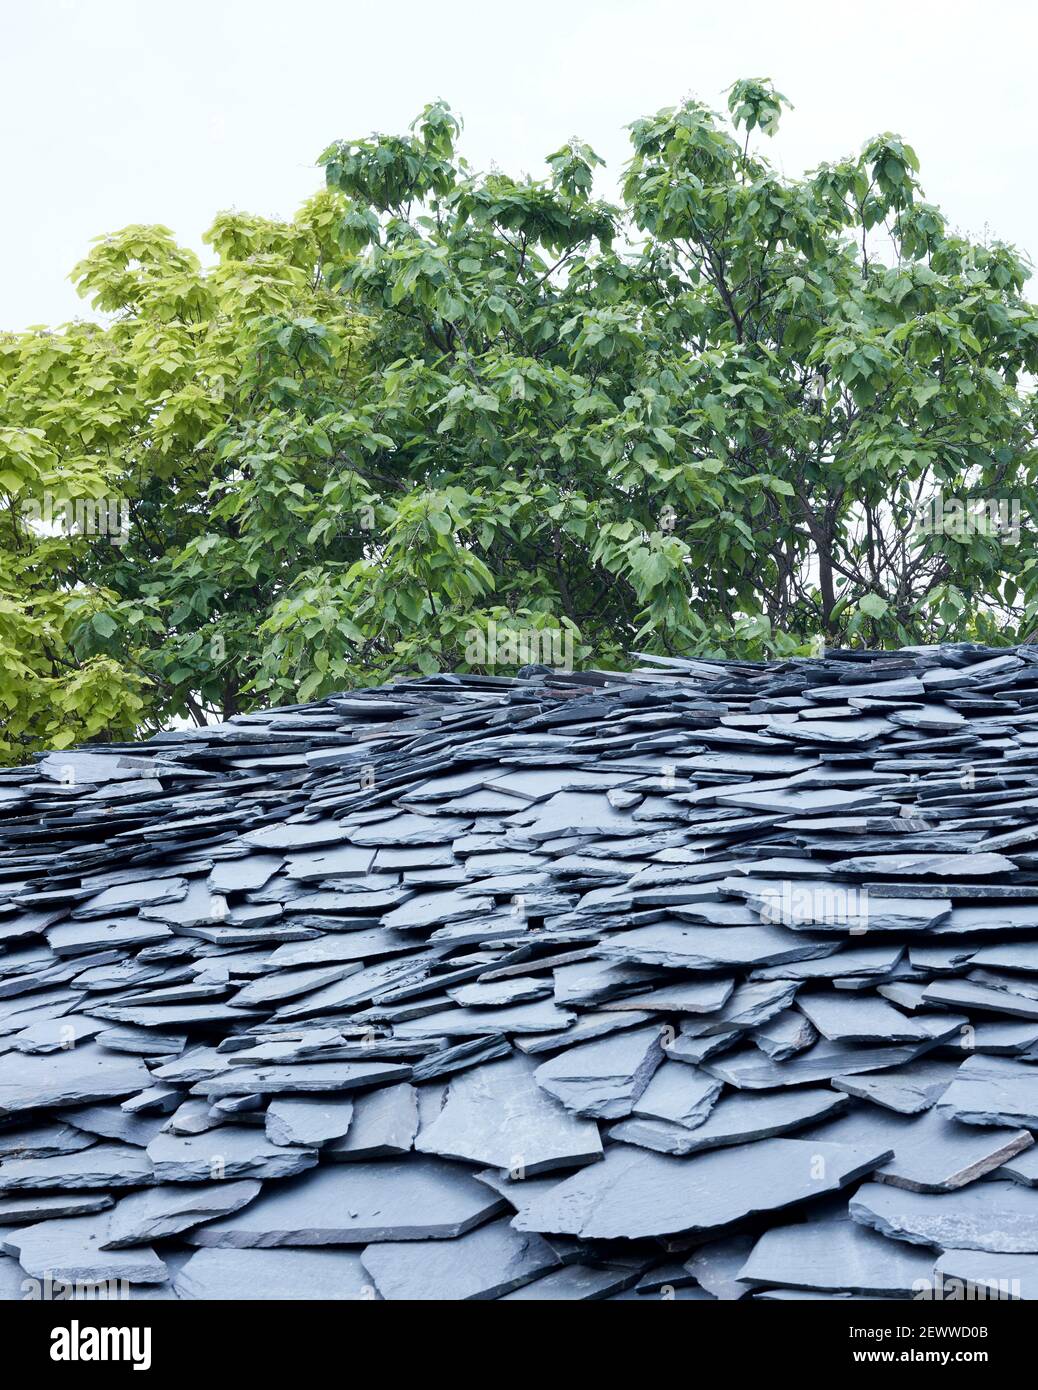 Détails du toit en ardoise. Serpentine Pavilion 2019, LONDRES, Royaume-Uni. Architecte: Junya Ishigami , 2021. Banque D'Images